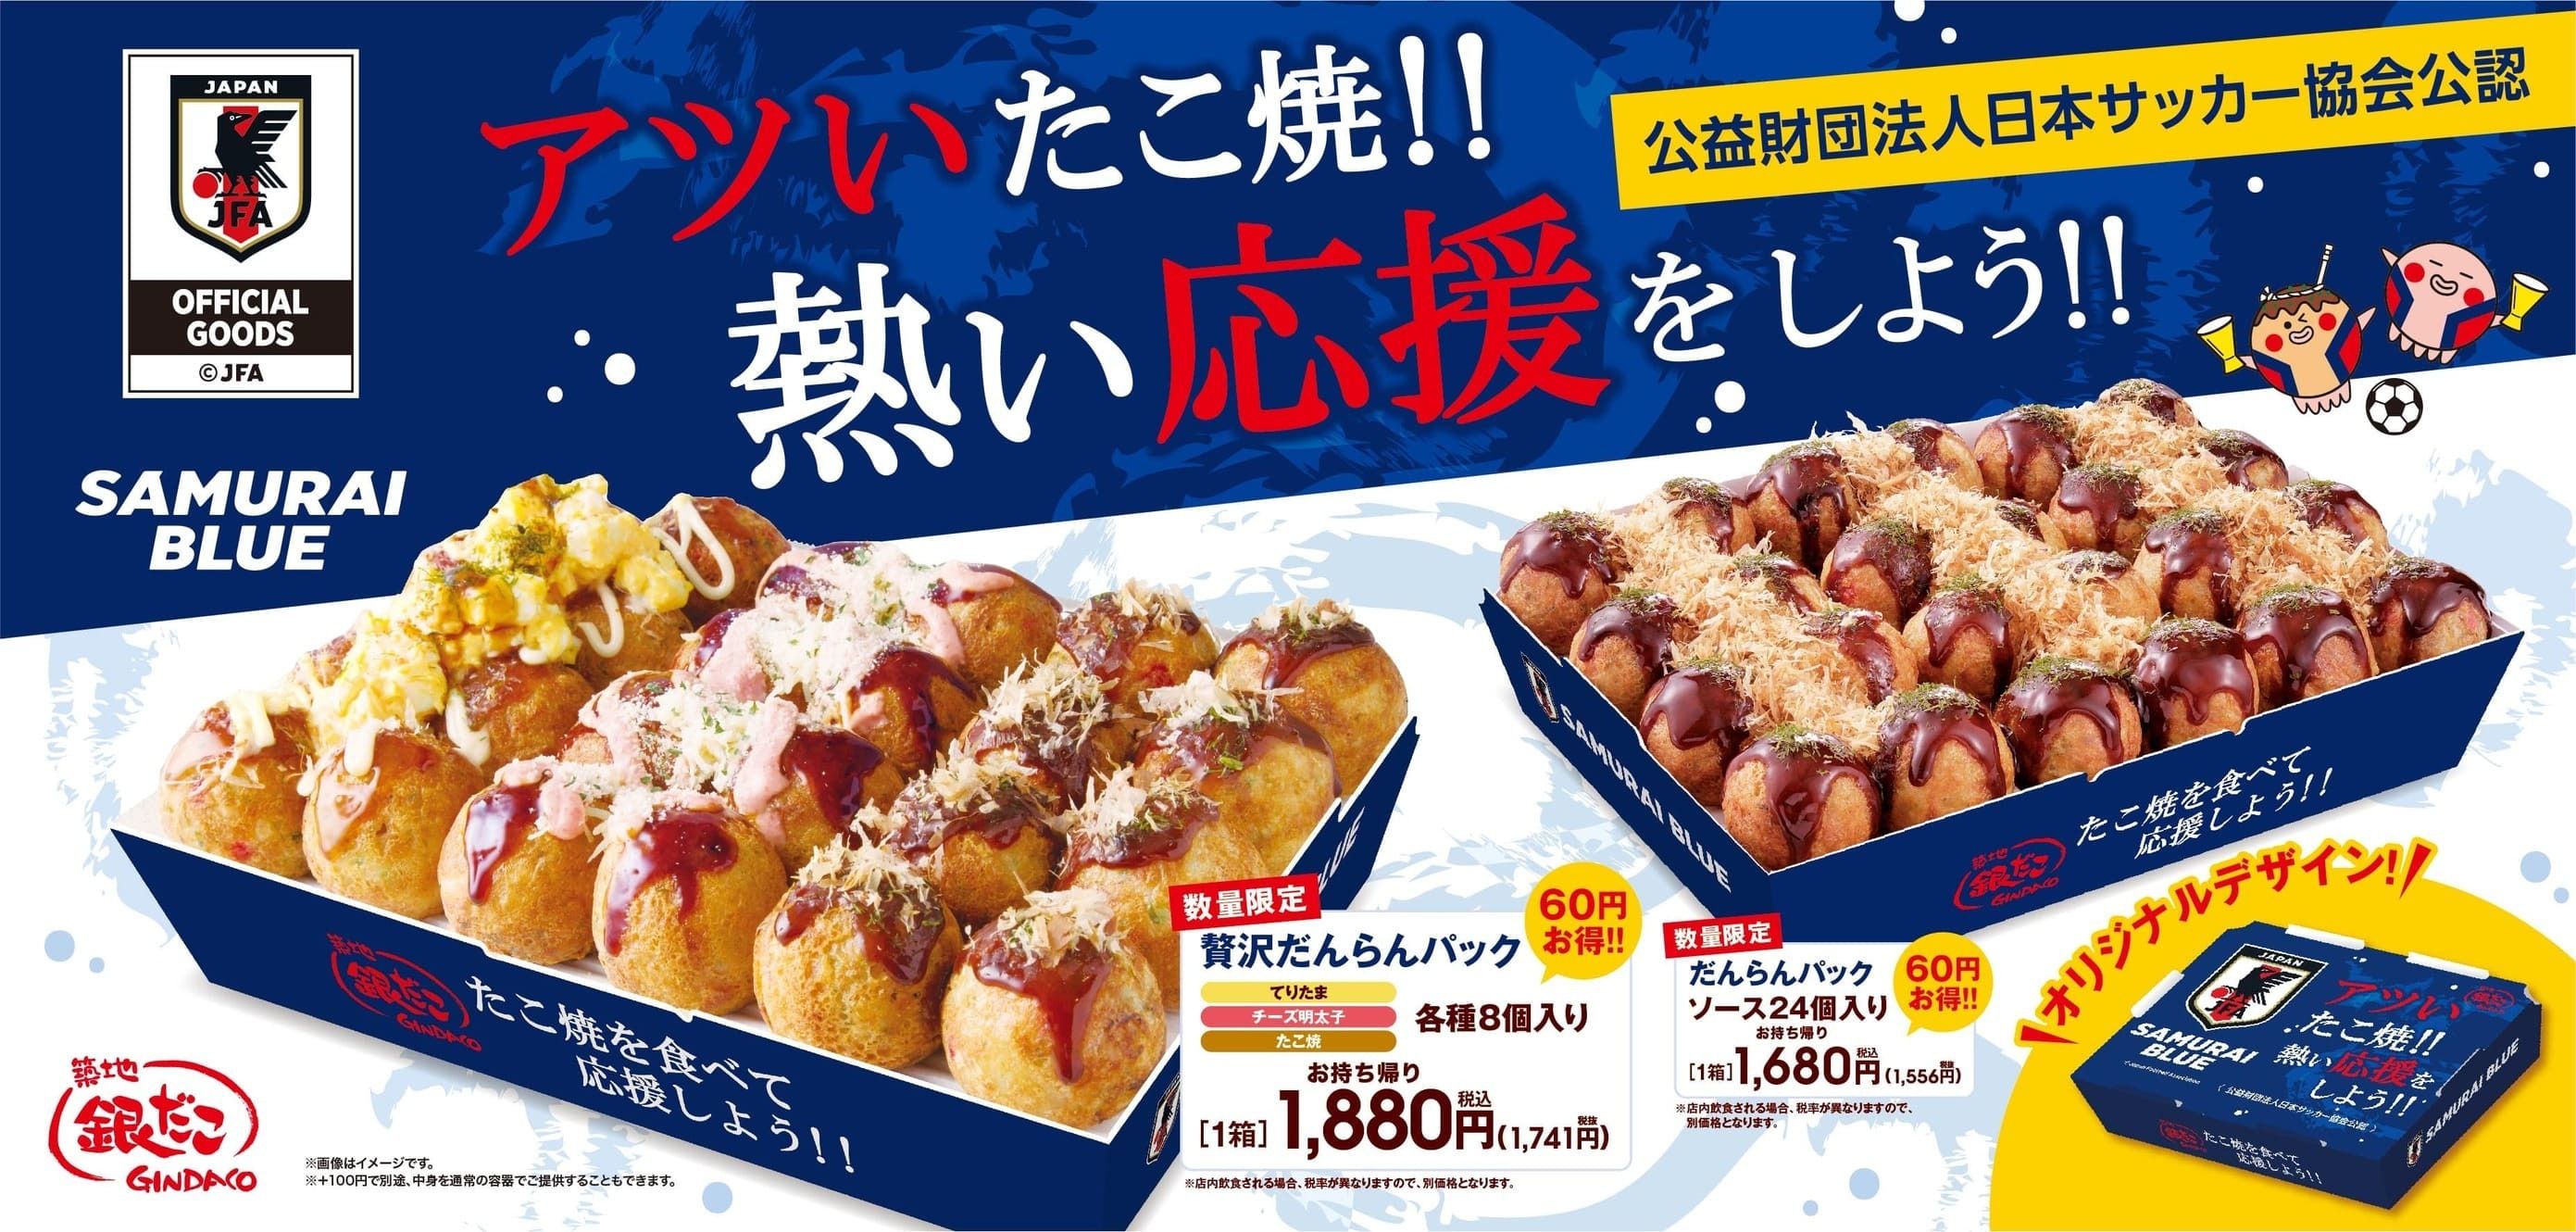 “たこ焼” を食べて、応援しよう！『サッカー日本代表オフィシャルライセンス商品 だんらんパック』11/17 (木) より 数量限定発売！#Z世代Pick